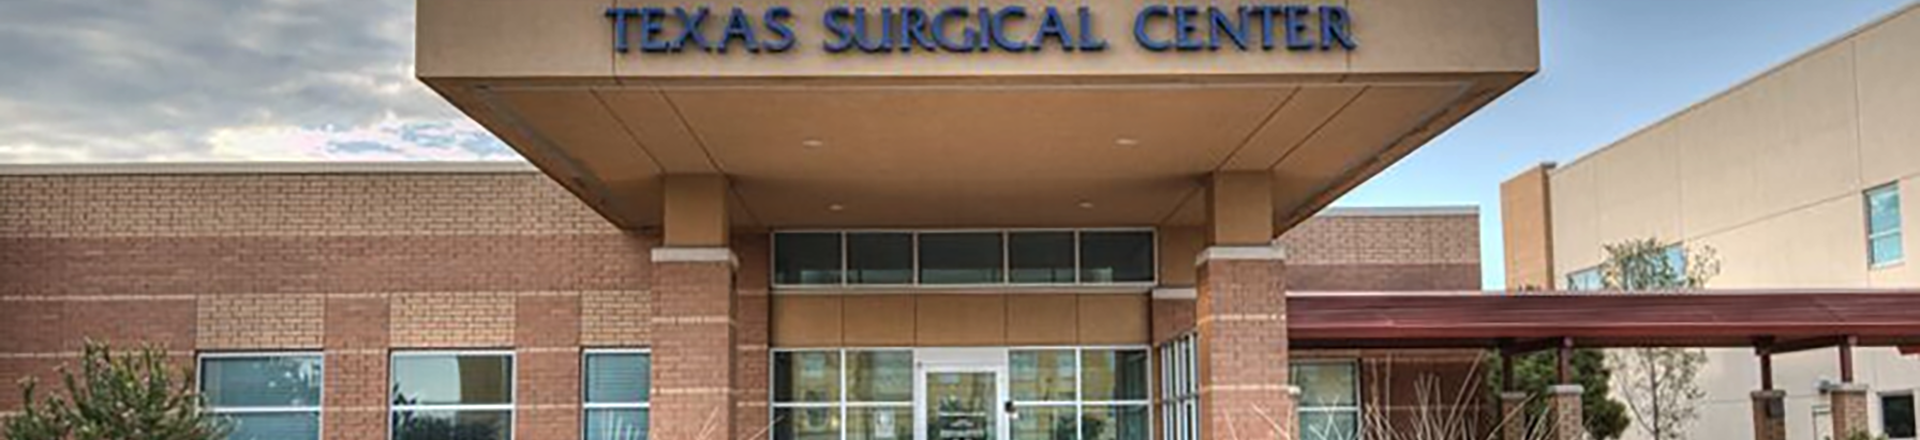 Texas Surgical Center